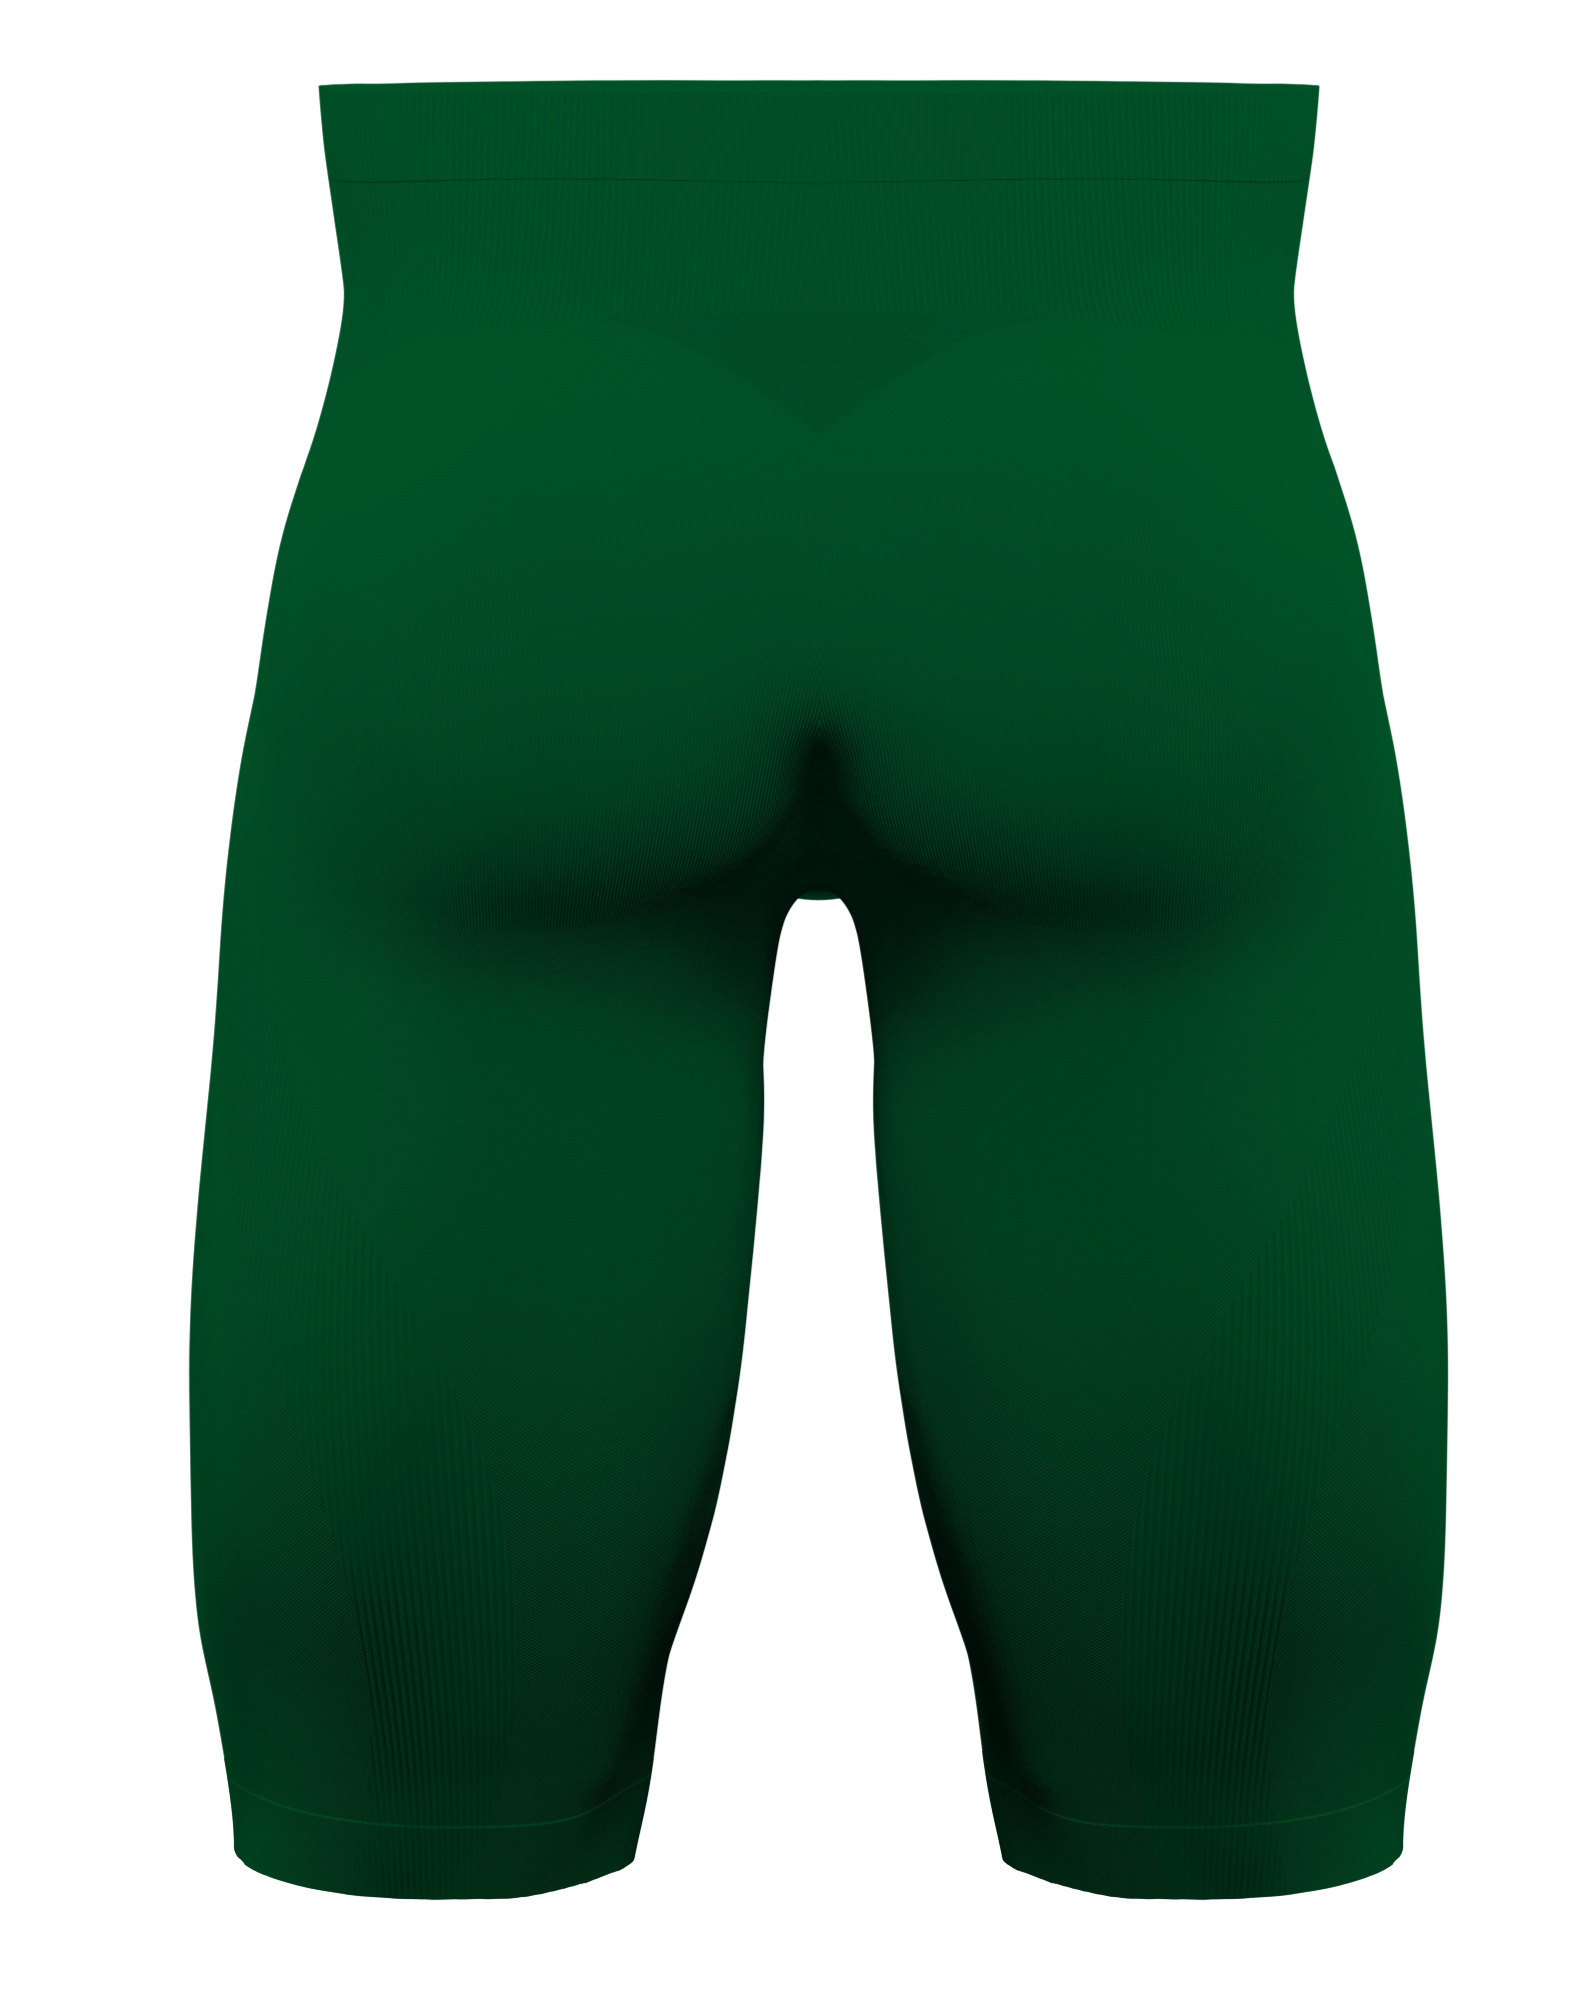 Knap'man Shop  Knap'man Compression Shorts USP 45% Green